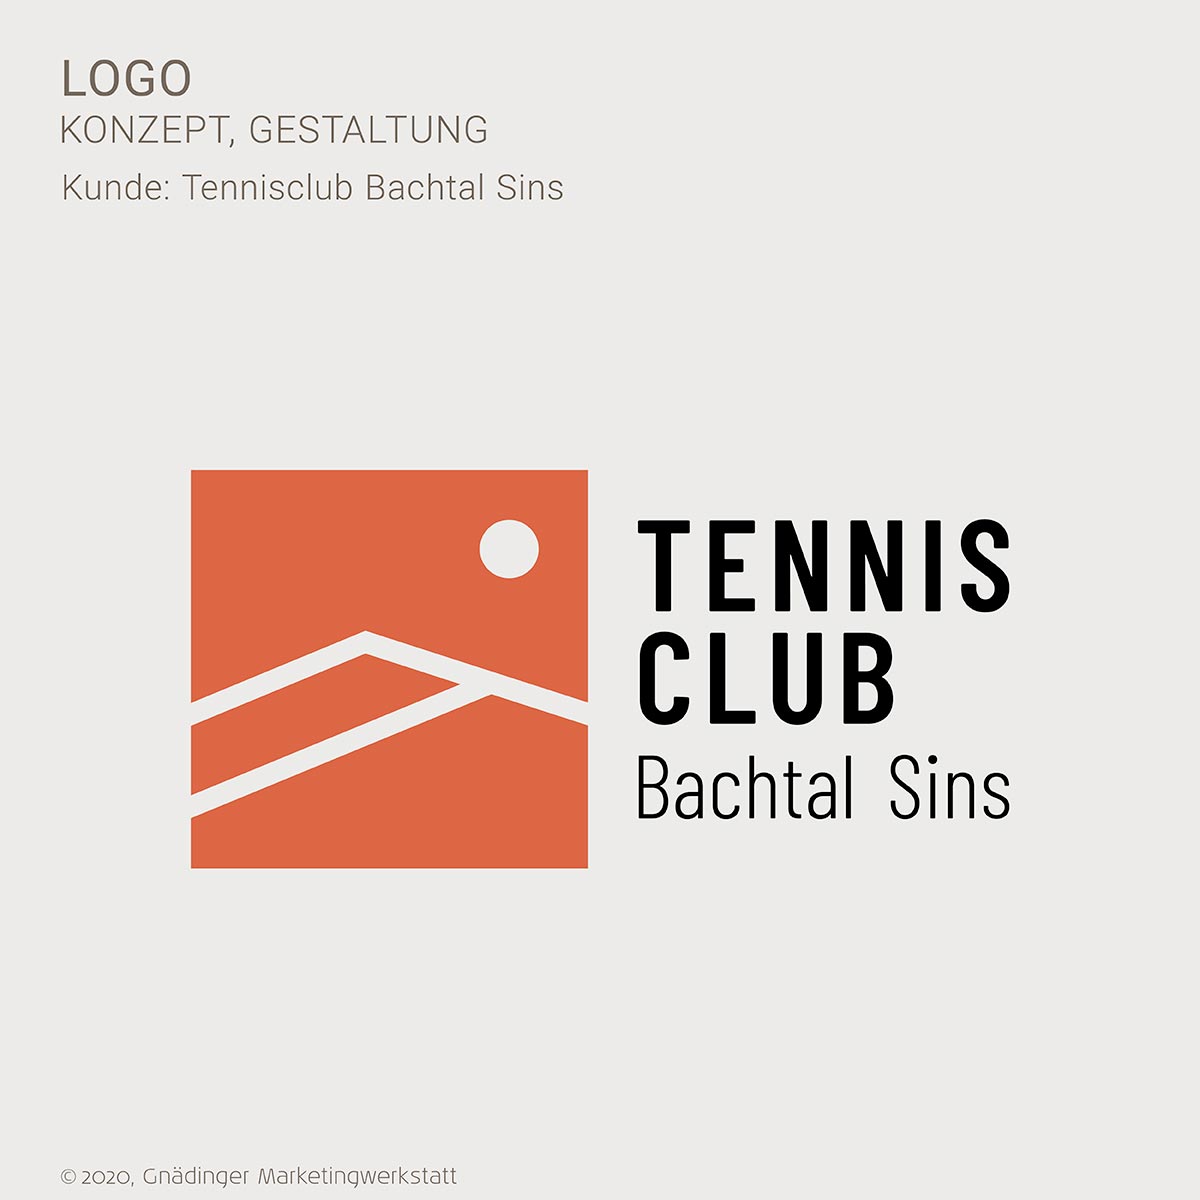 WEB1_GMW_Projekt_tennisclub_sins_logo_01-2020_1200x1200px_RGB